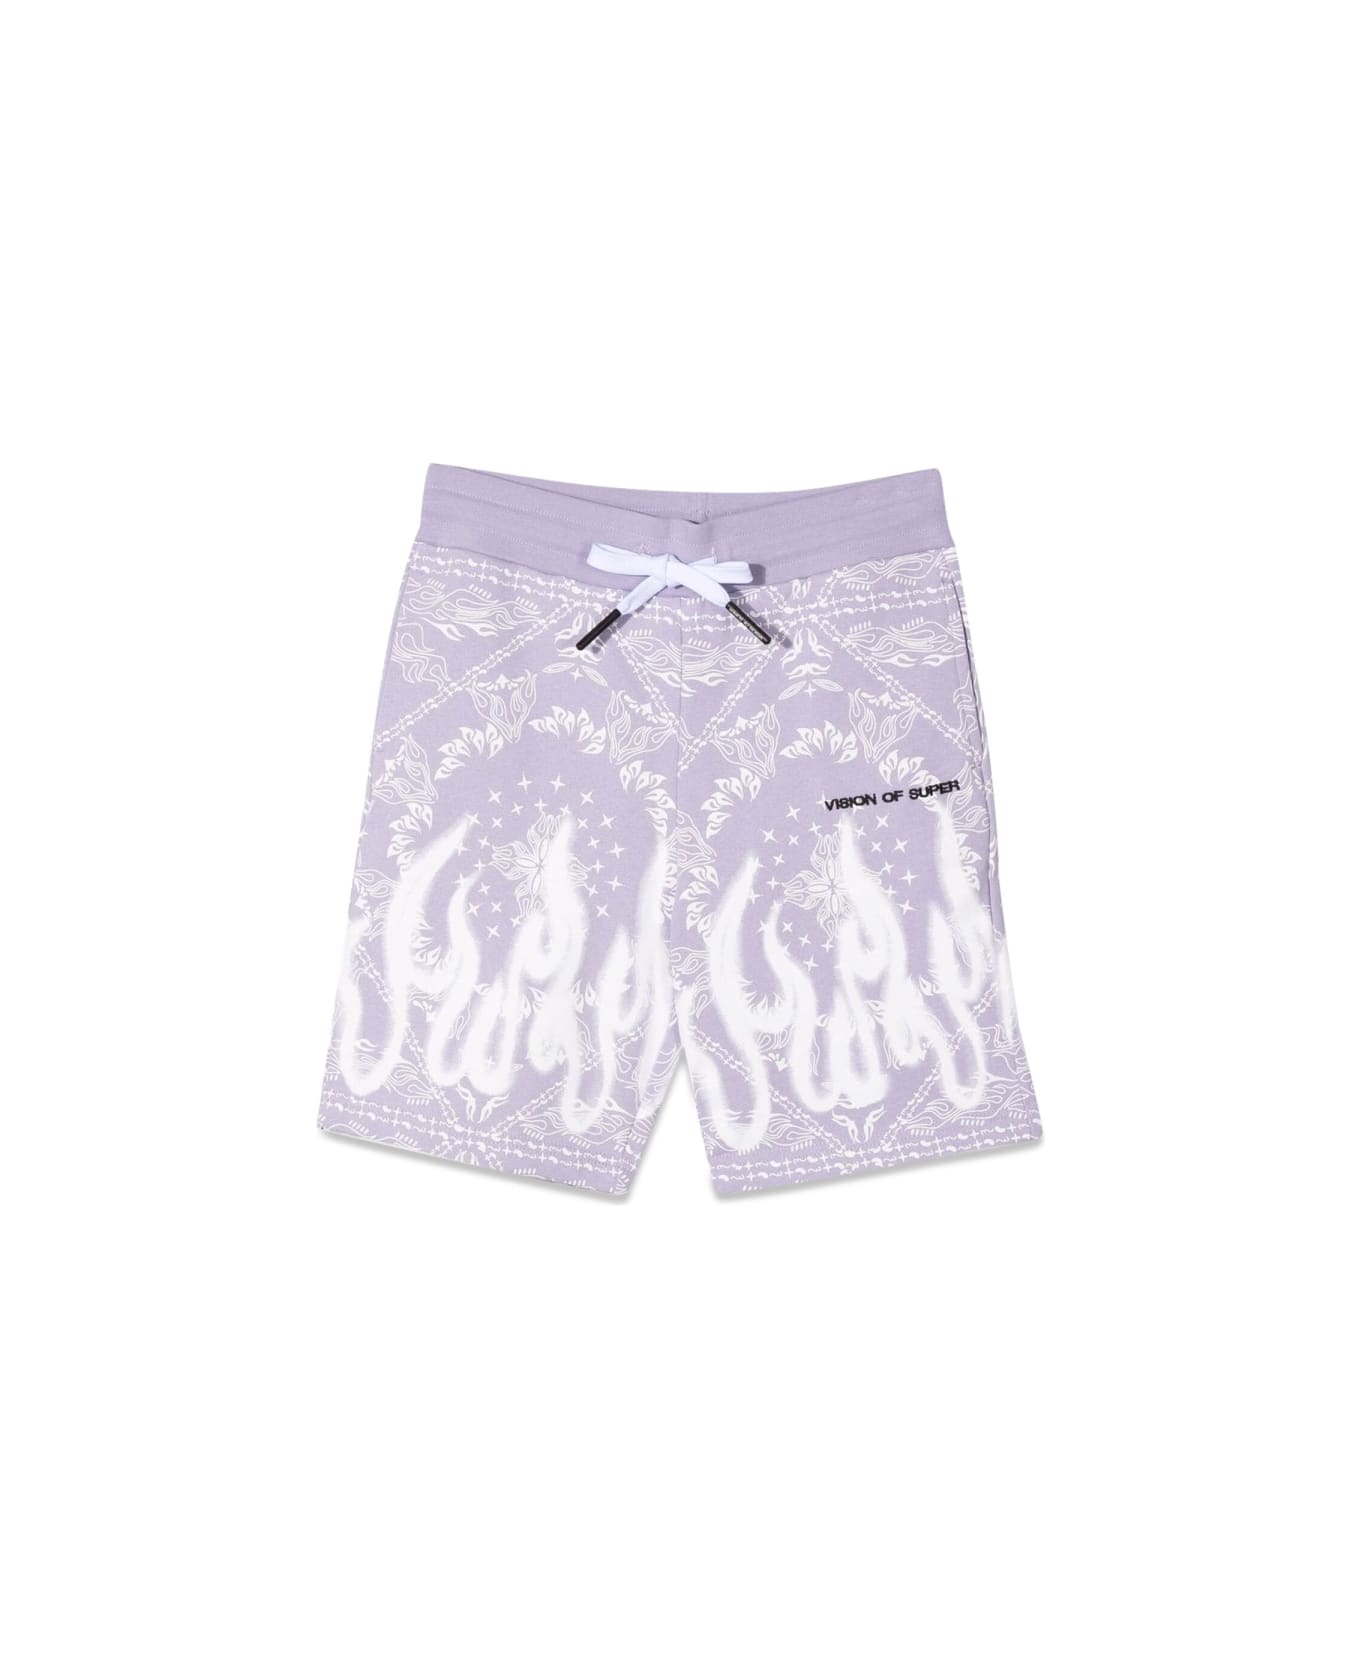 Vision of Super Lilac Shorts Kids With Bandana Print - LILAC